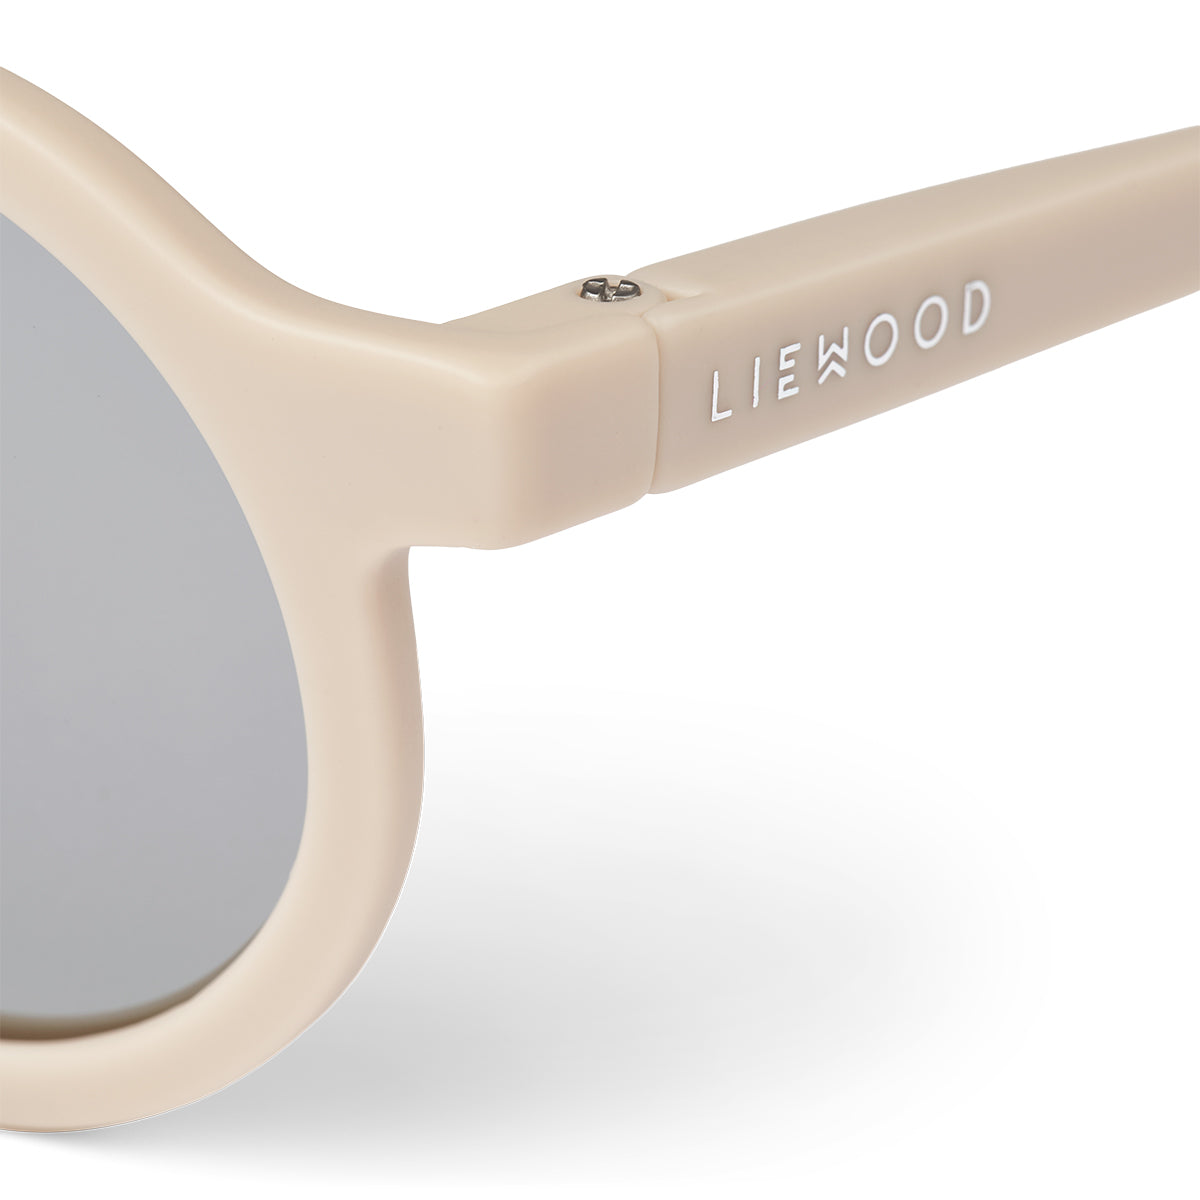 Bescherm de ogen van jouw kindje met deze hippe ronde Darla mirror zonnebril van Liewood in de variant Sandy. Een leuke retro-look onder weg of op vakantie. Verkrijgbaar in verschillende maten en kleuren. VanZus